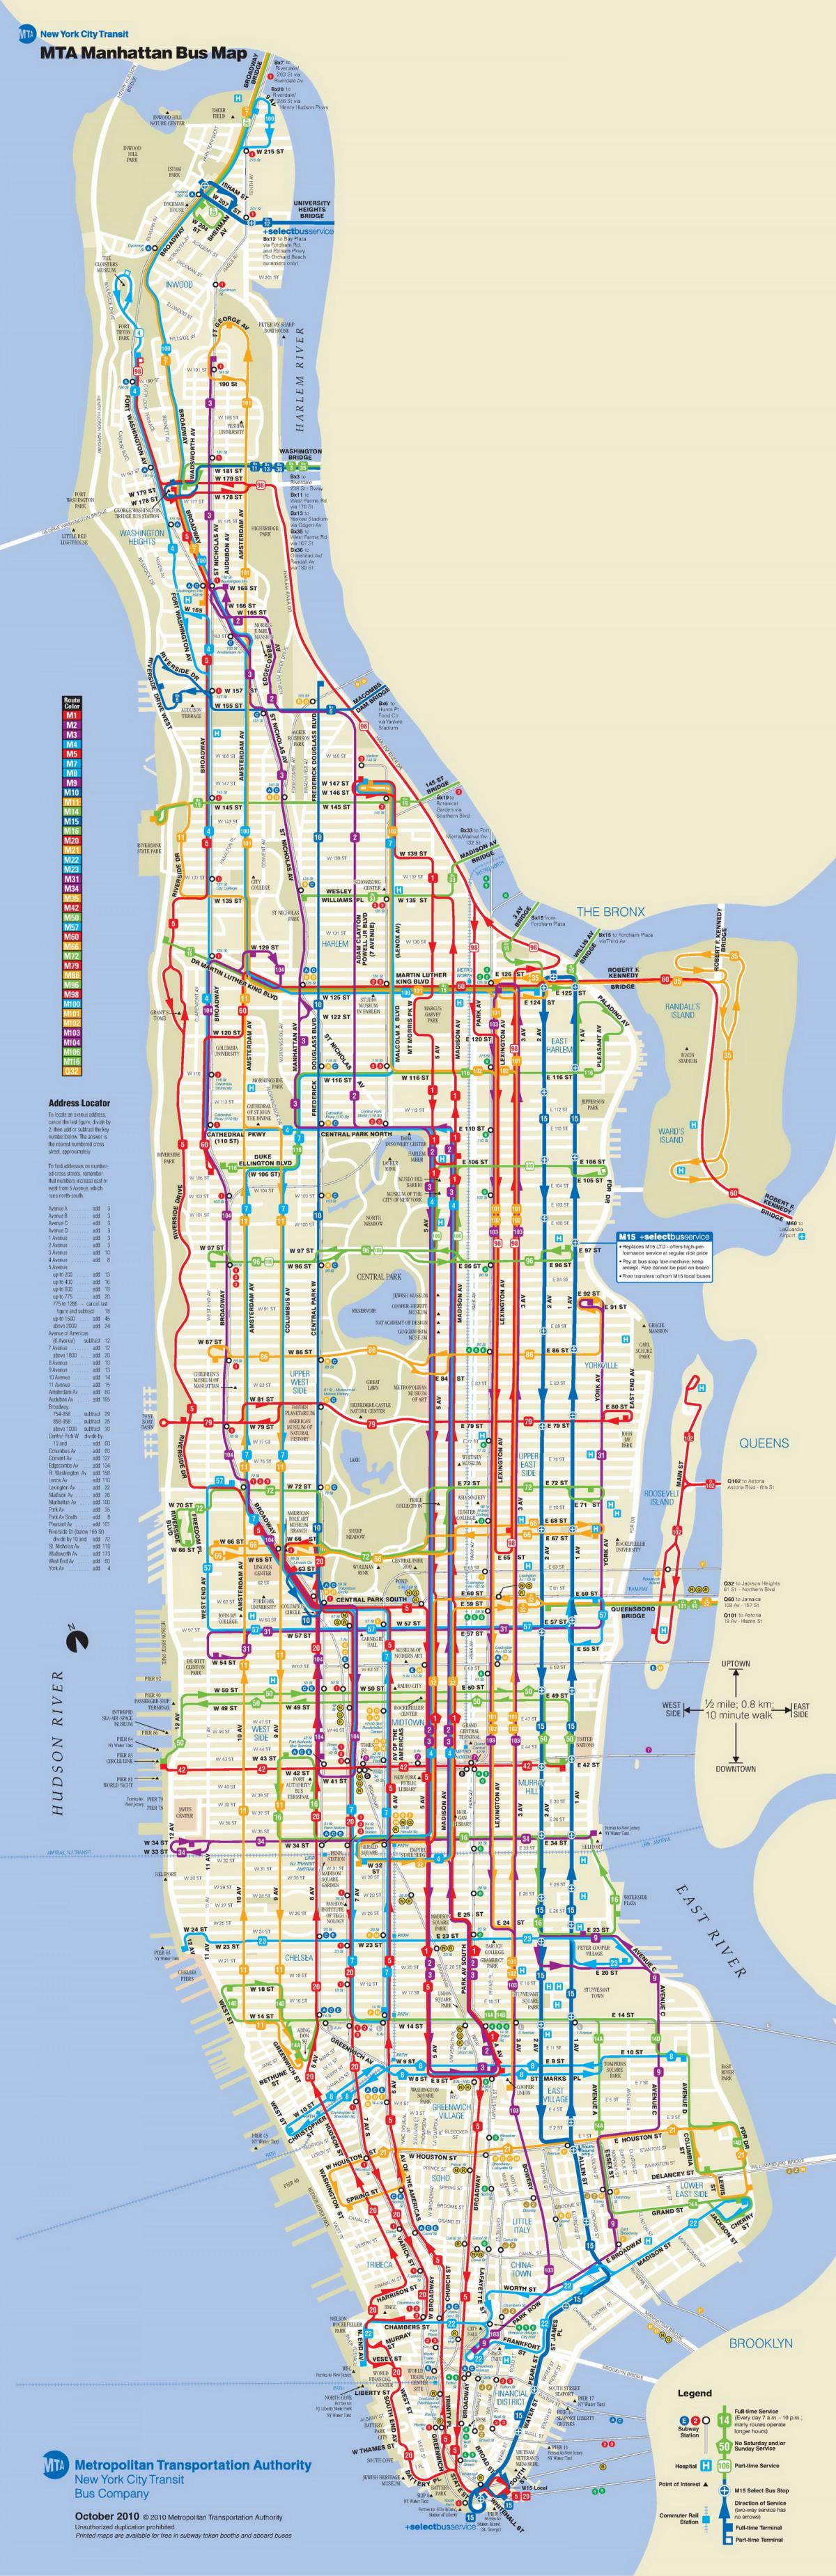 NYC ავტობუსი რუკა, მანჰეტენზე